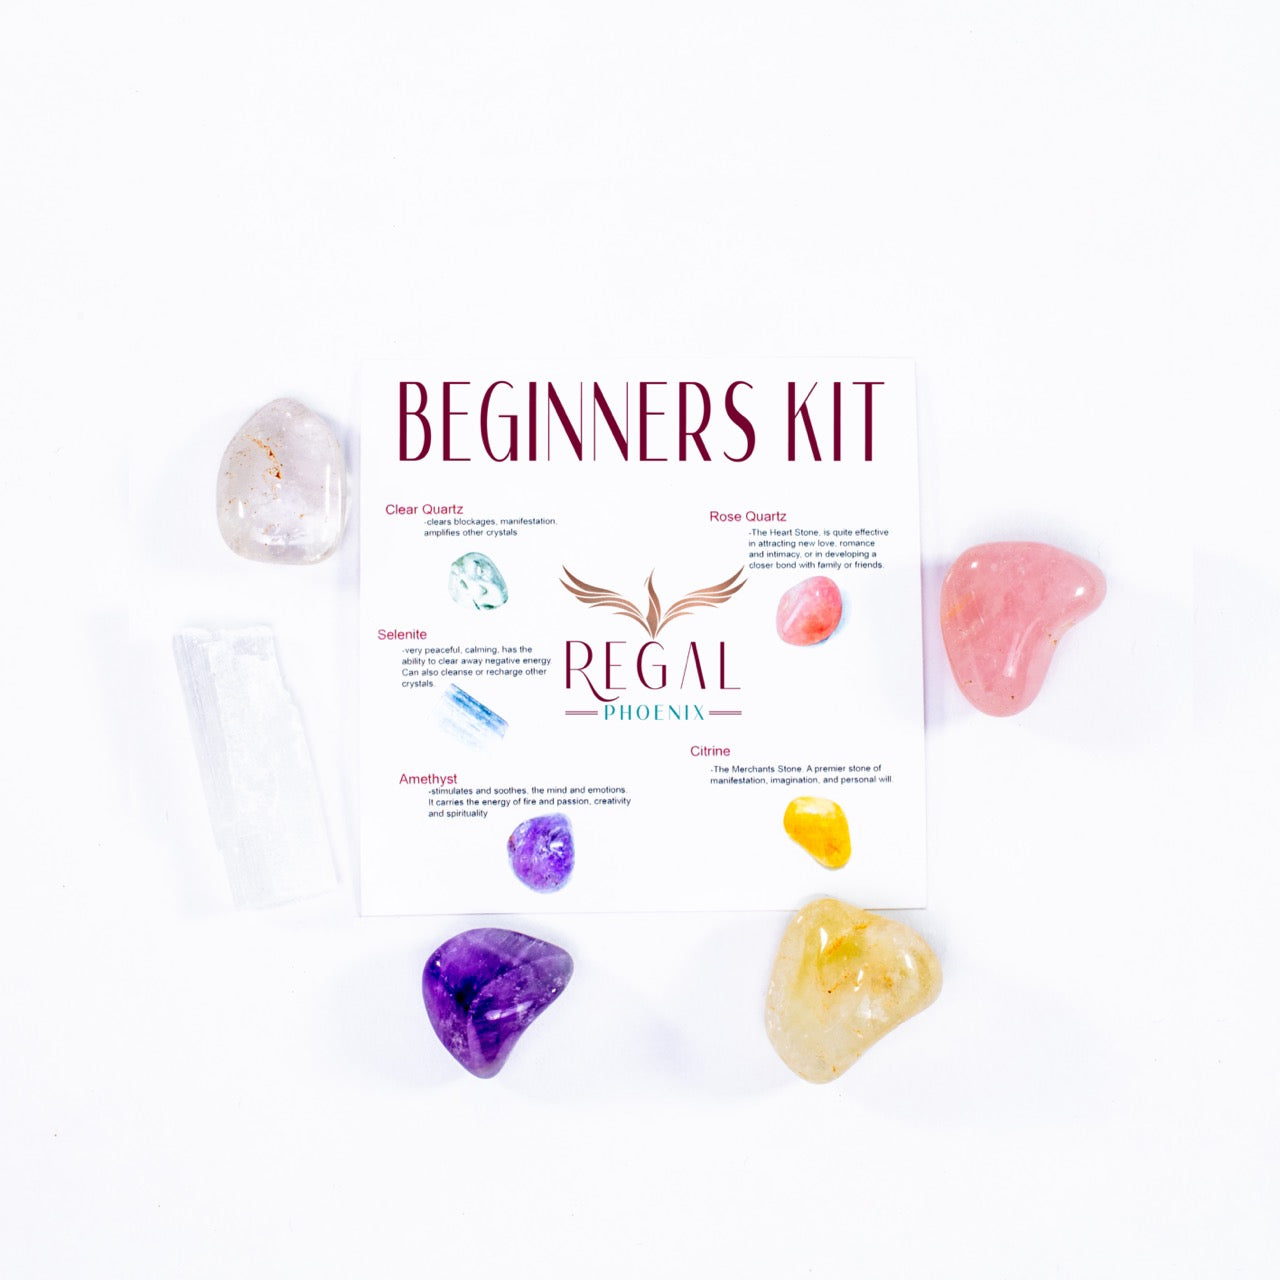 Beginners Crystal Kit